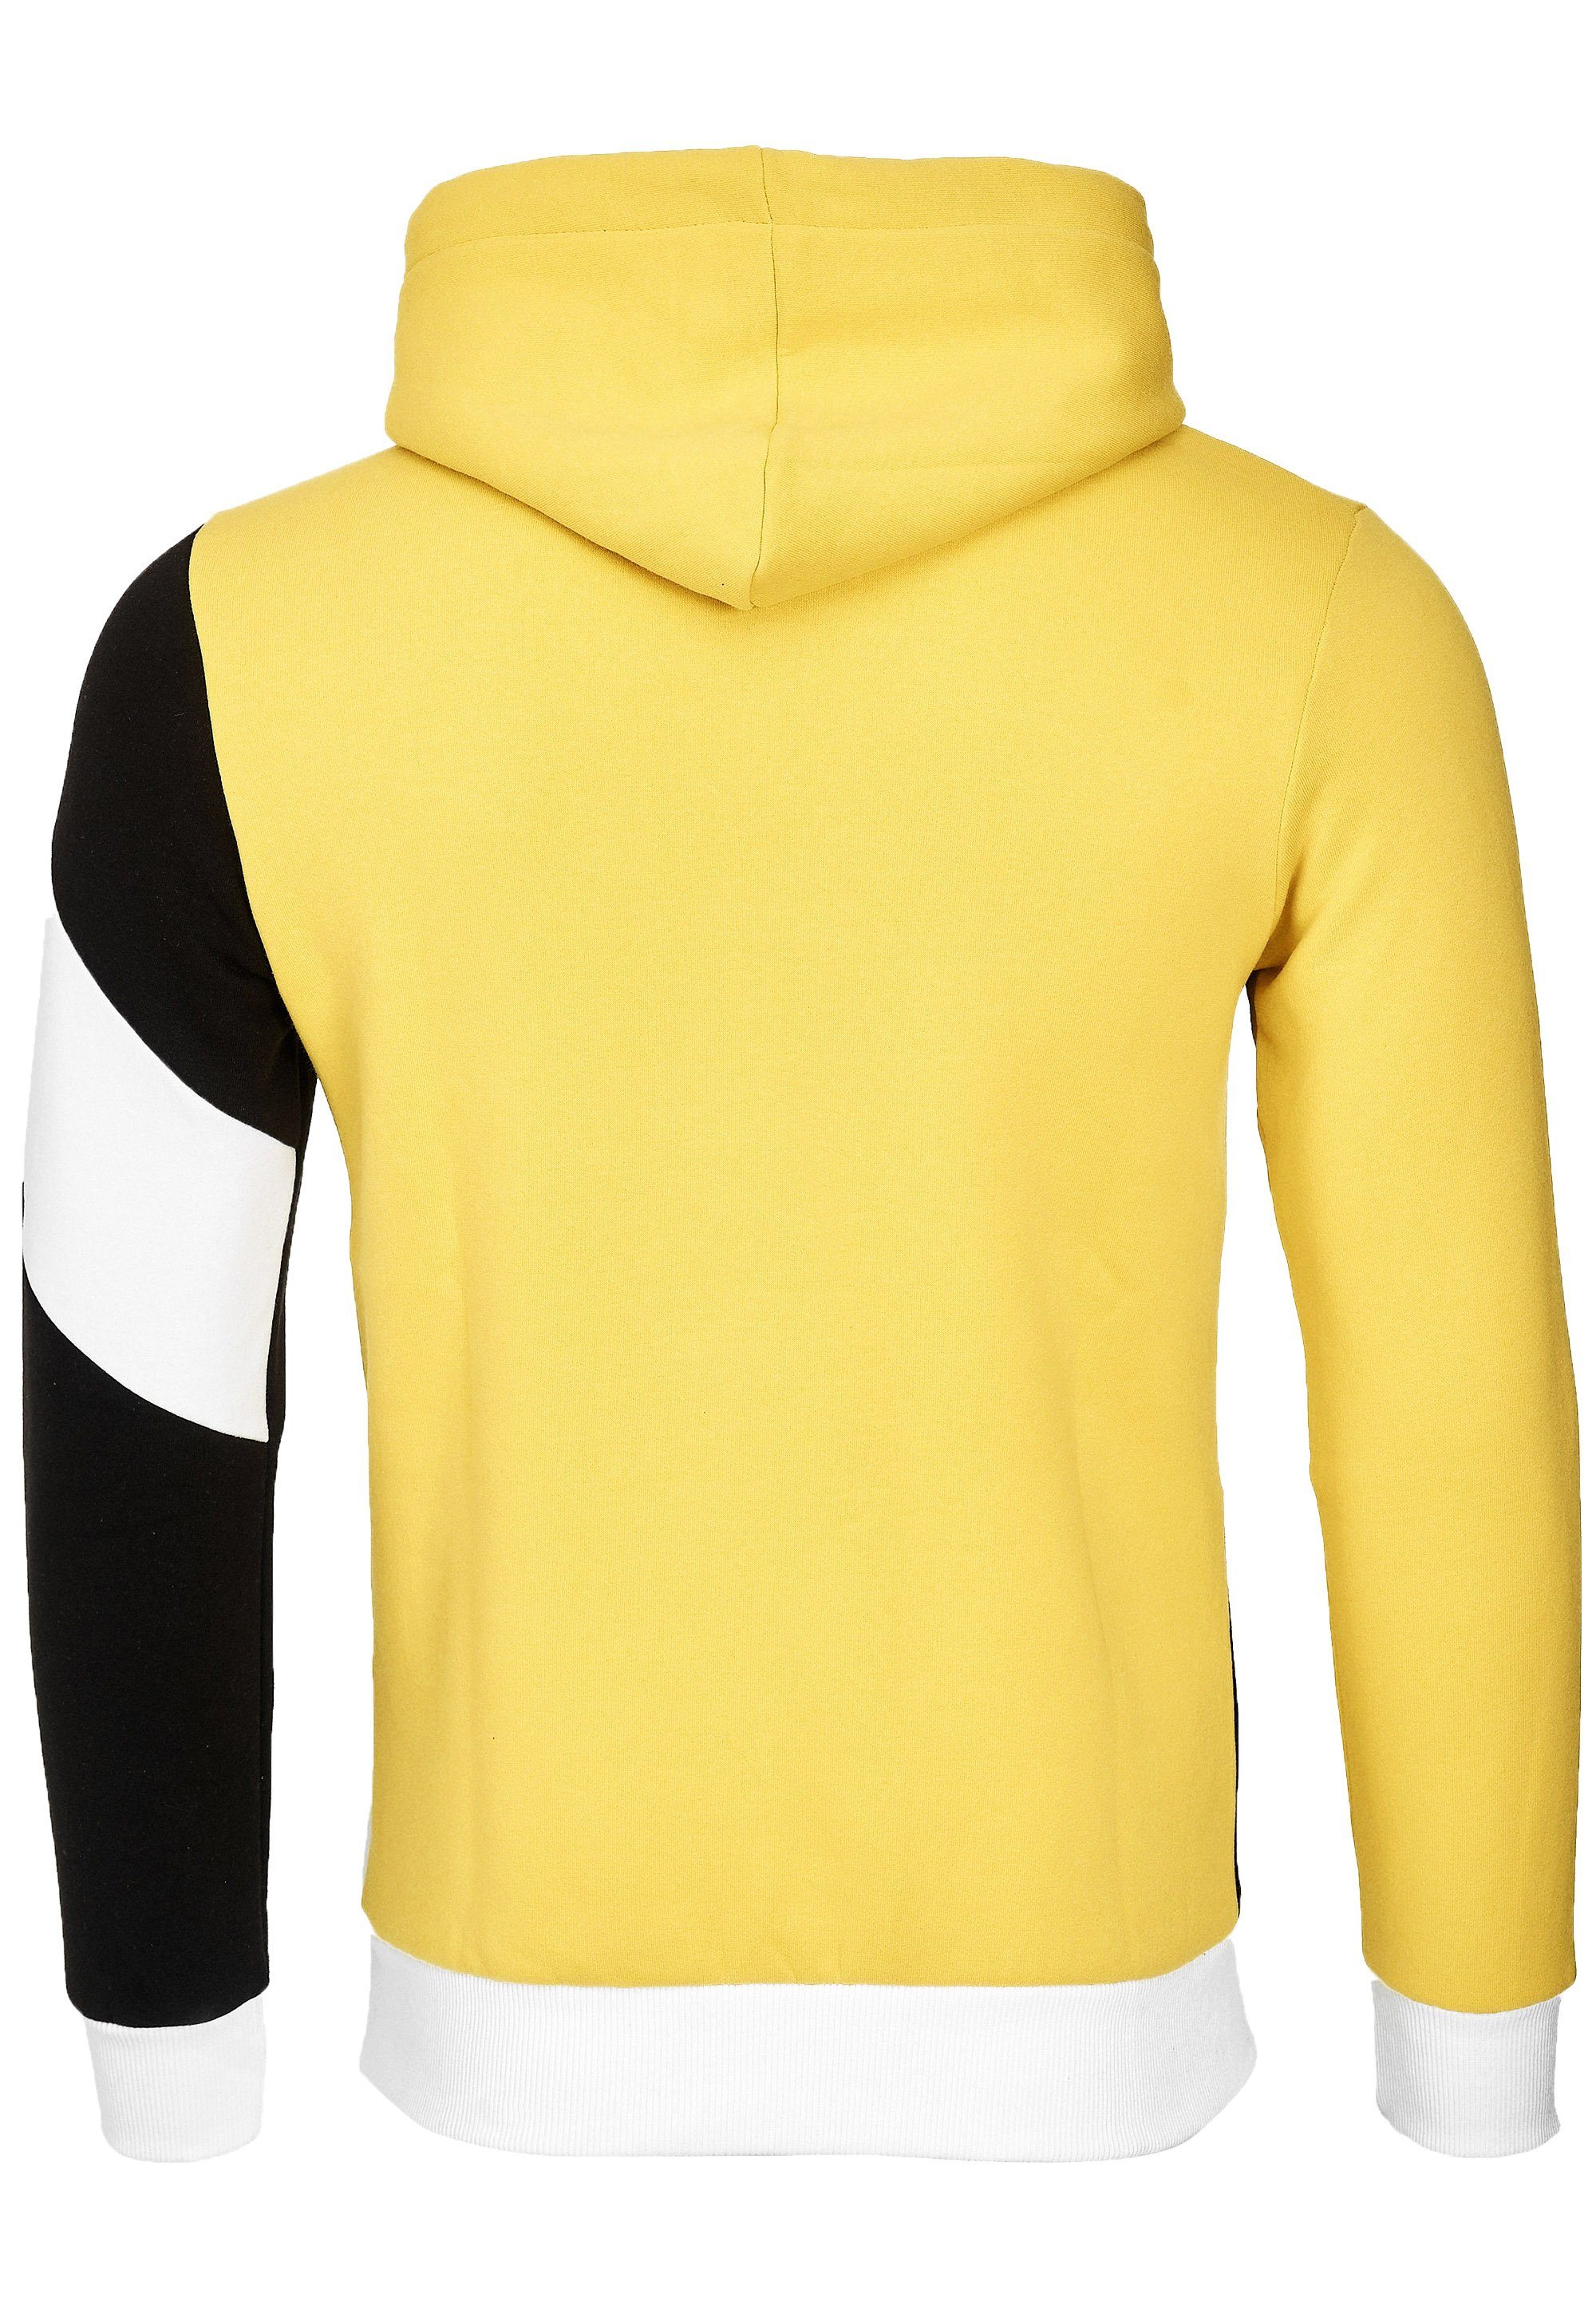 Neal Design sportlichem gelb-schwarz in Rusty Kapuzensweatshirt